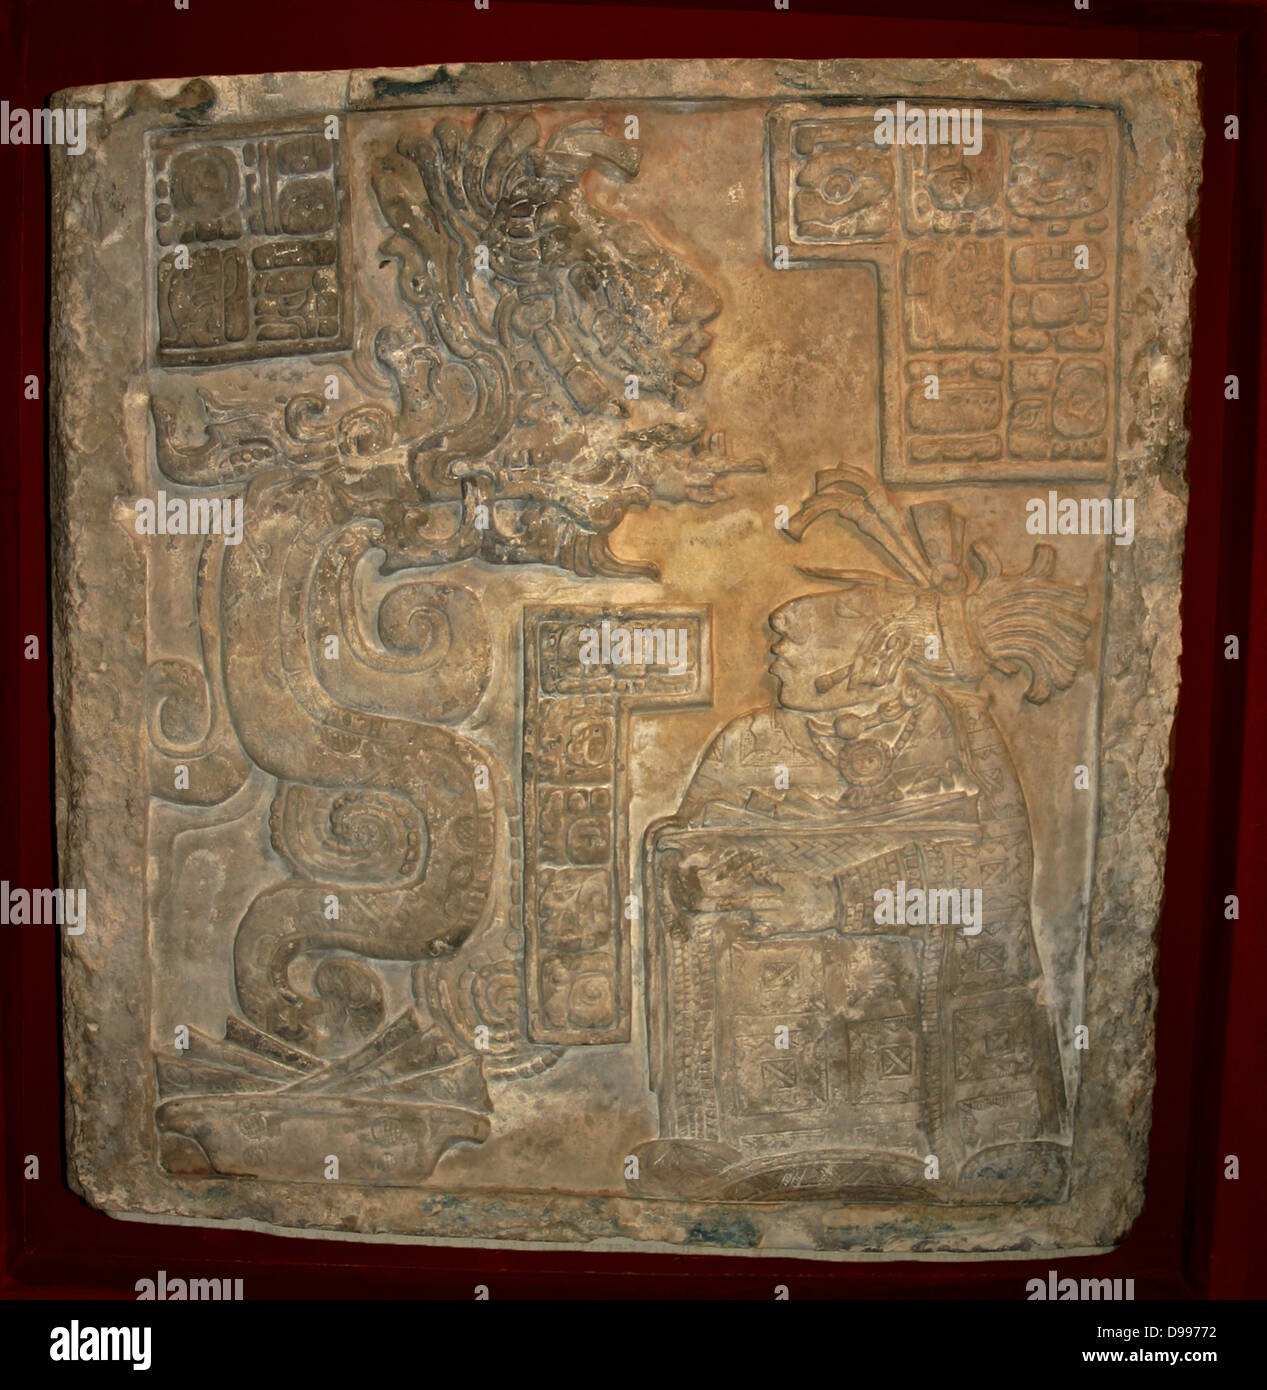 Yaxchilan linteau 15Maya, période Classique (600-900 AD) de Yaxchilan, au Mexique. Un serpent apparition d'un temple maya, linteau en calcaire, l'un d'une série de trois panneaux commandés par Bird Jaguar IV pour la structure 21 à Yaxchilan. Le linteau montre une des épouses de Jaguar d'oiseaux, Dame Wak Tuun, lors d'une saignée rituel. Le Serpent apparaît avant que sa vision Banque D'Images